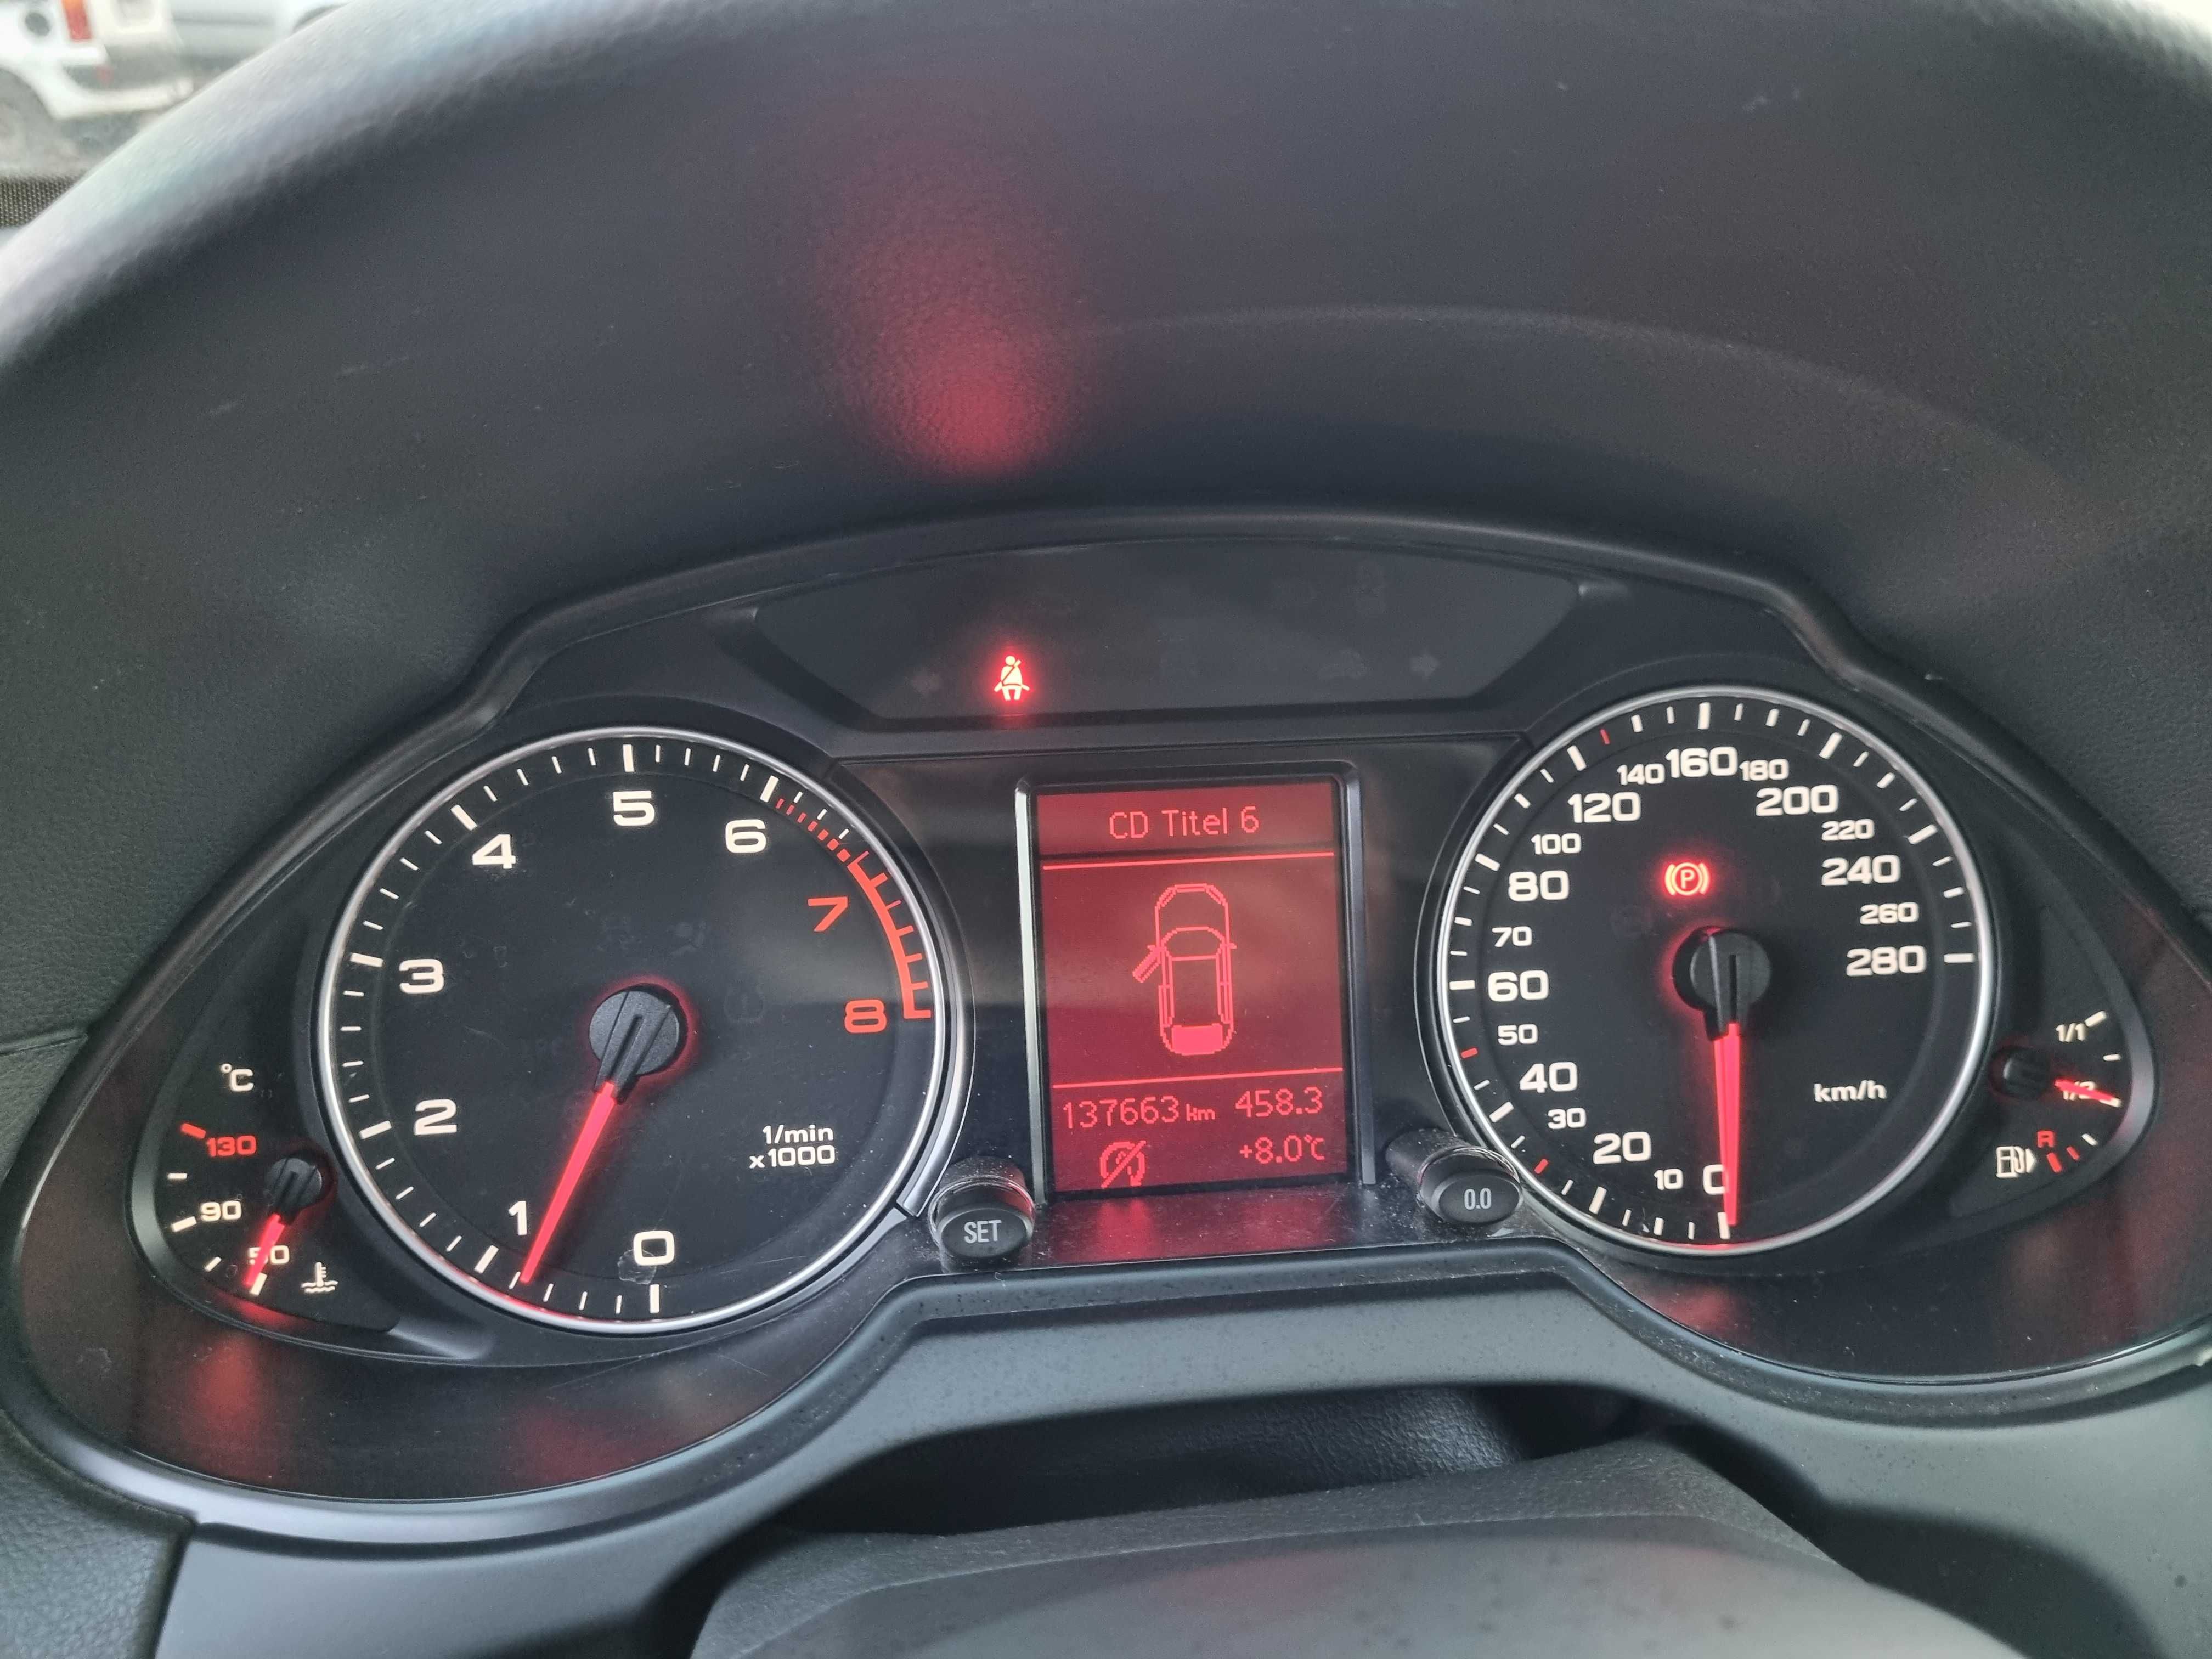 Audi Q5 2.0 TFSI quattro 130 tys km serwis okazja